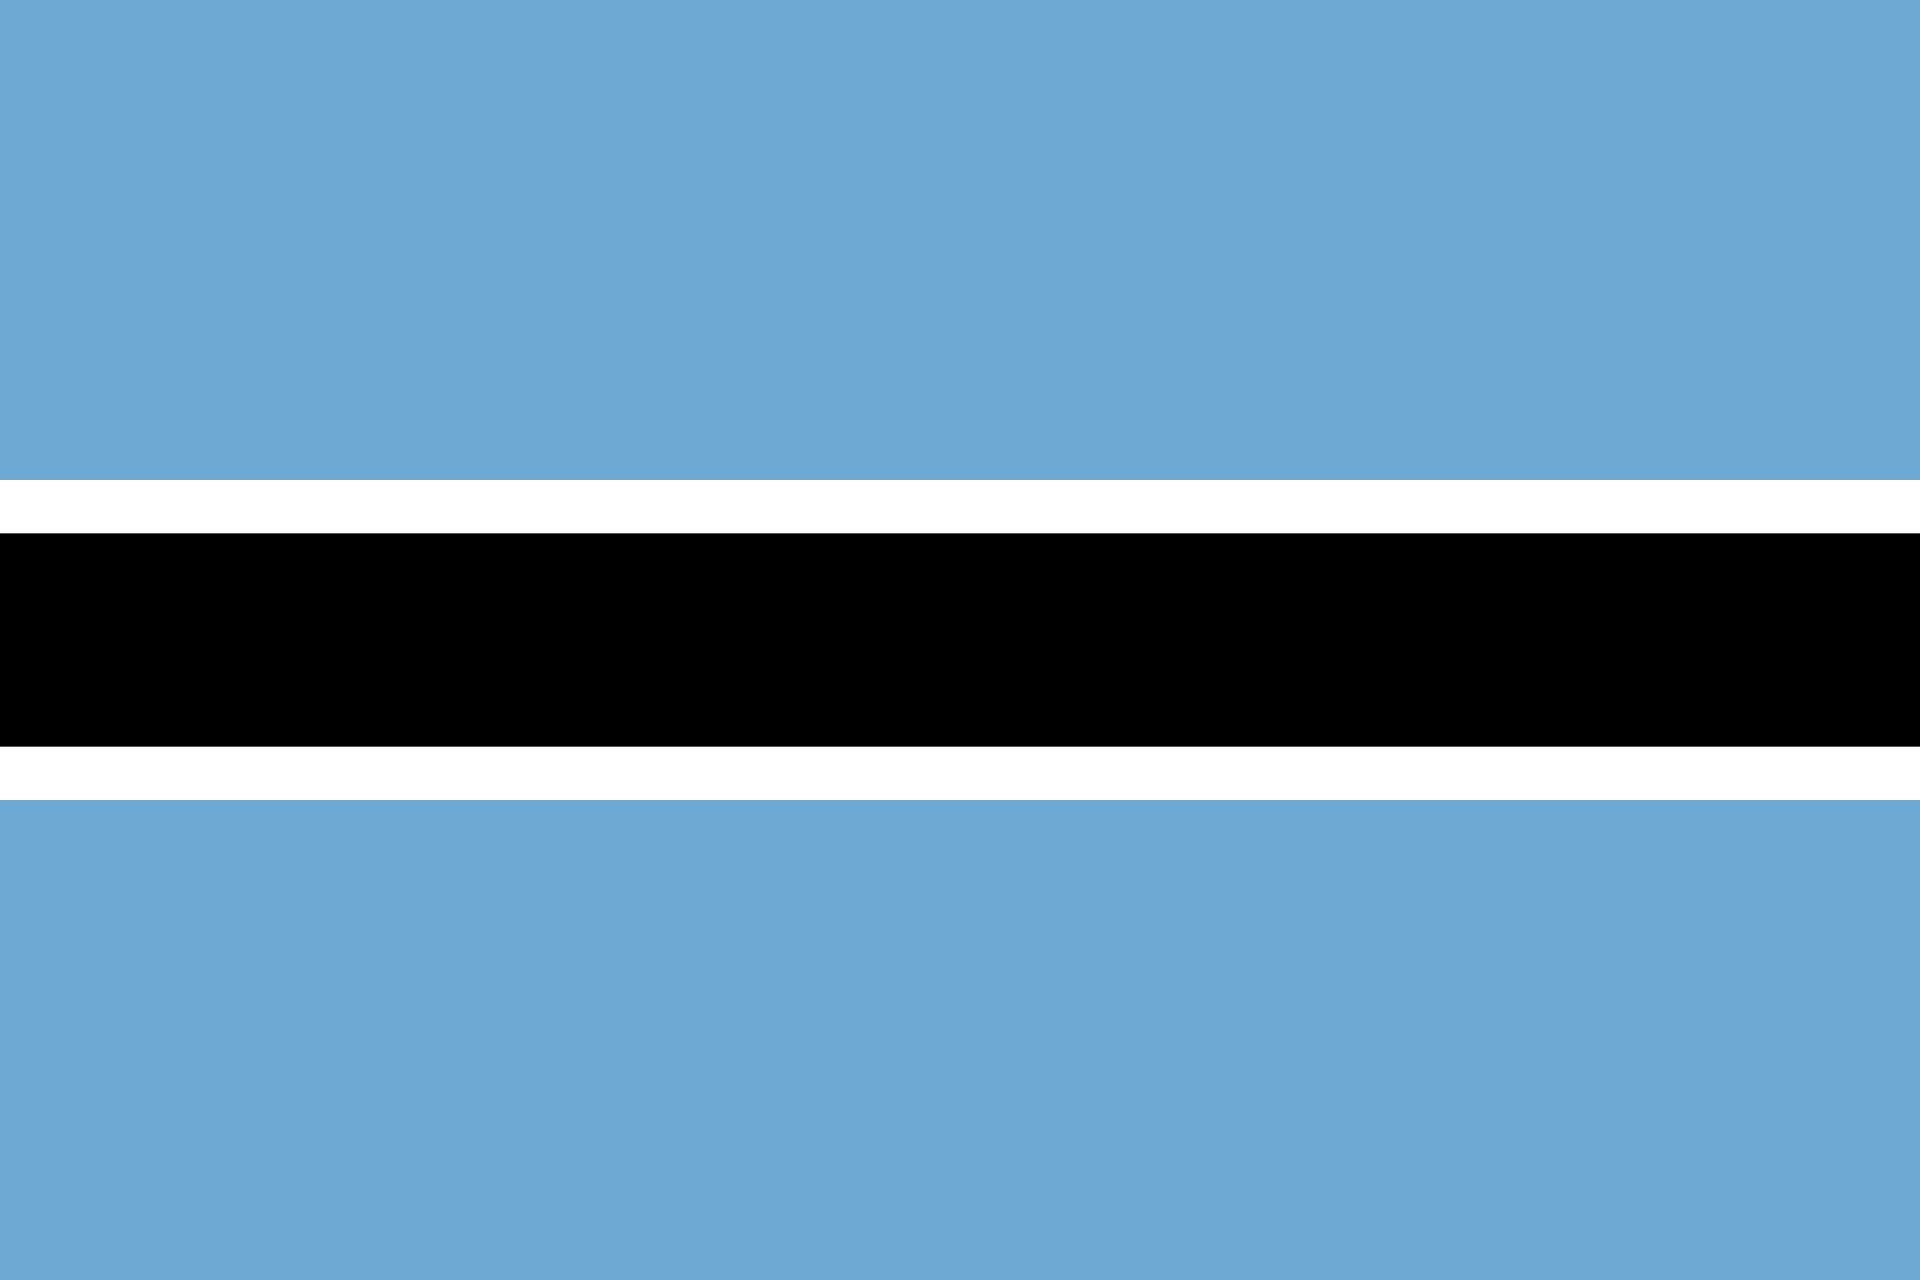 Bandeira do Botsuana